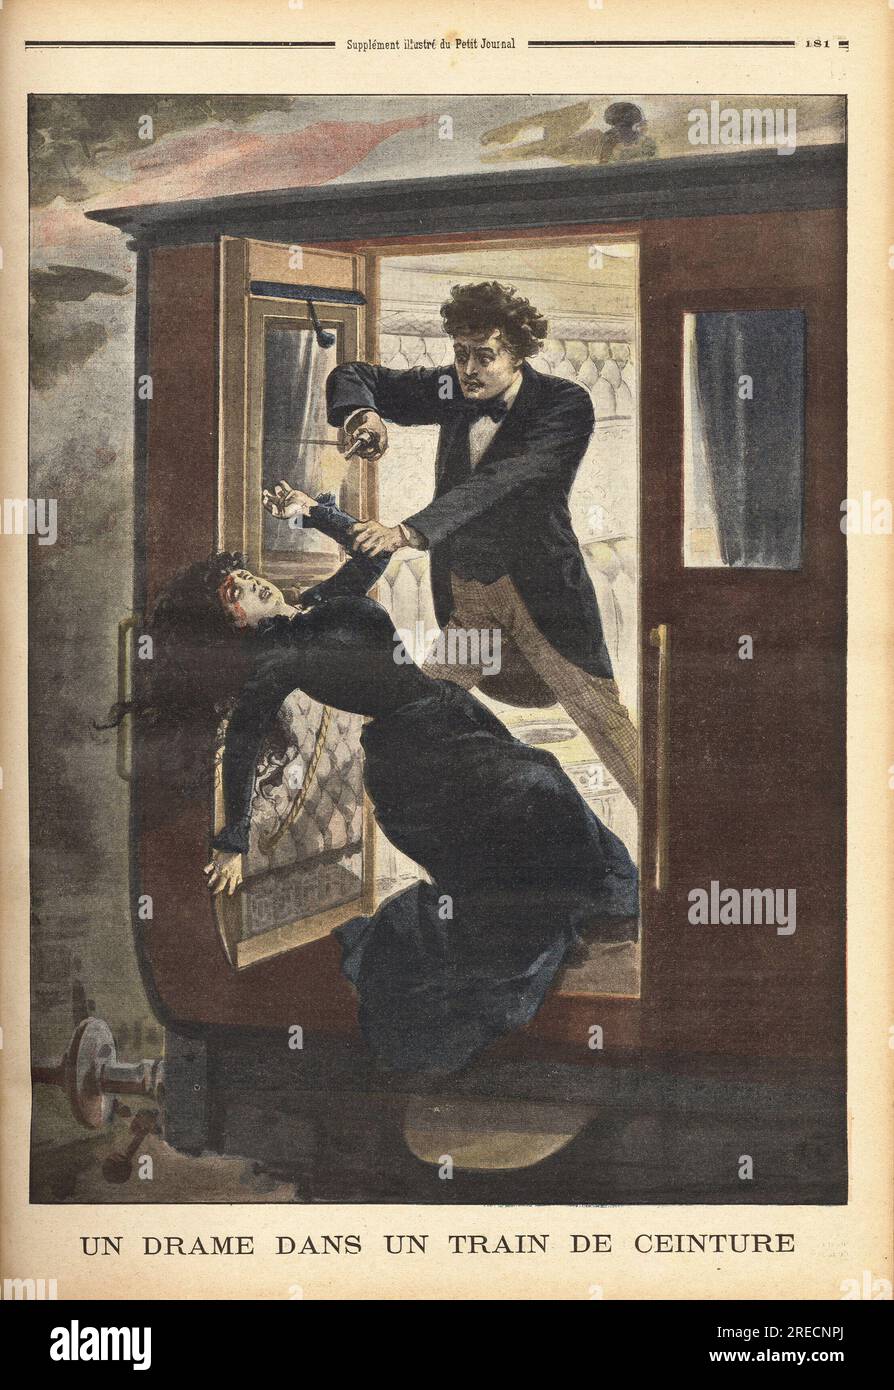 Dans un train de la ceinture parisienne, un jeune homme tire deux balles de pistolet dans la tete d'une jeune fille qui refusait ses avances, puis la jette par la portiere du train en marche. Gravure in "le petit Journal" 961901. . Foto Stock